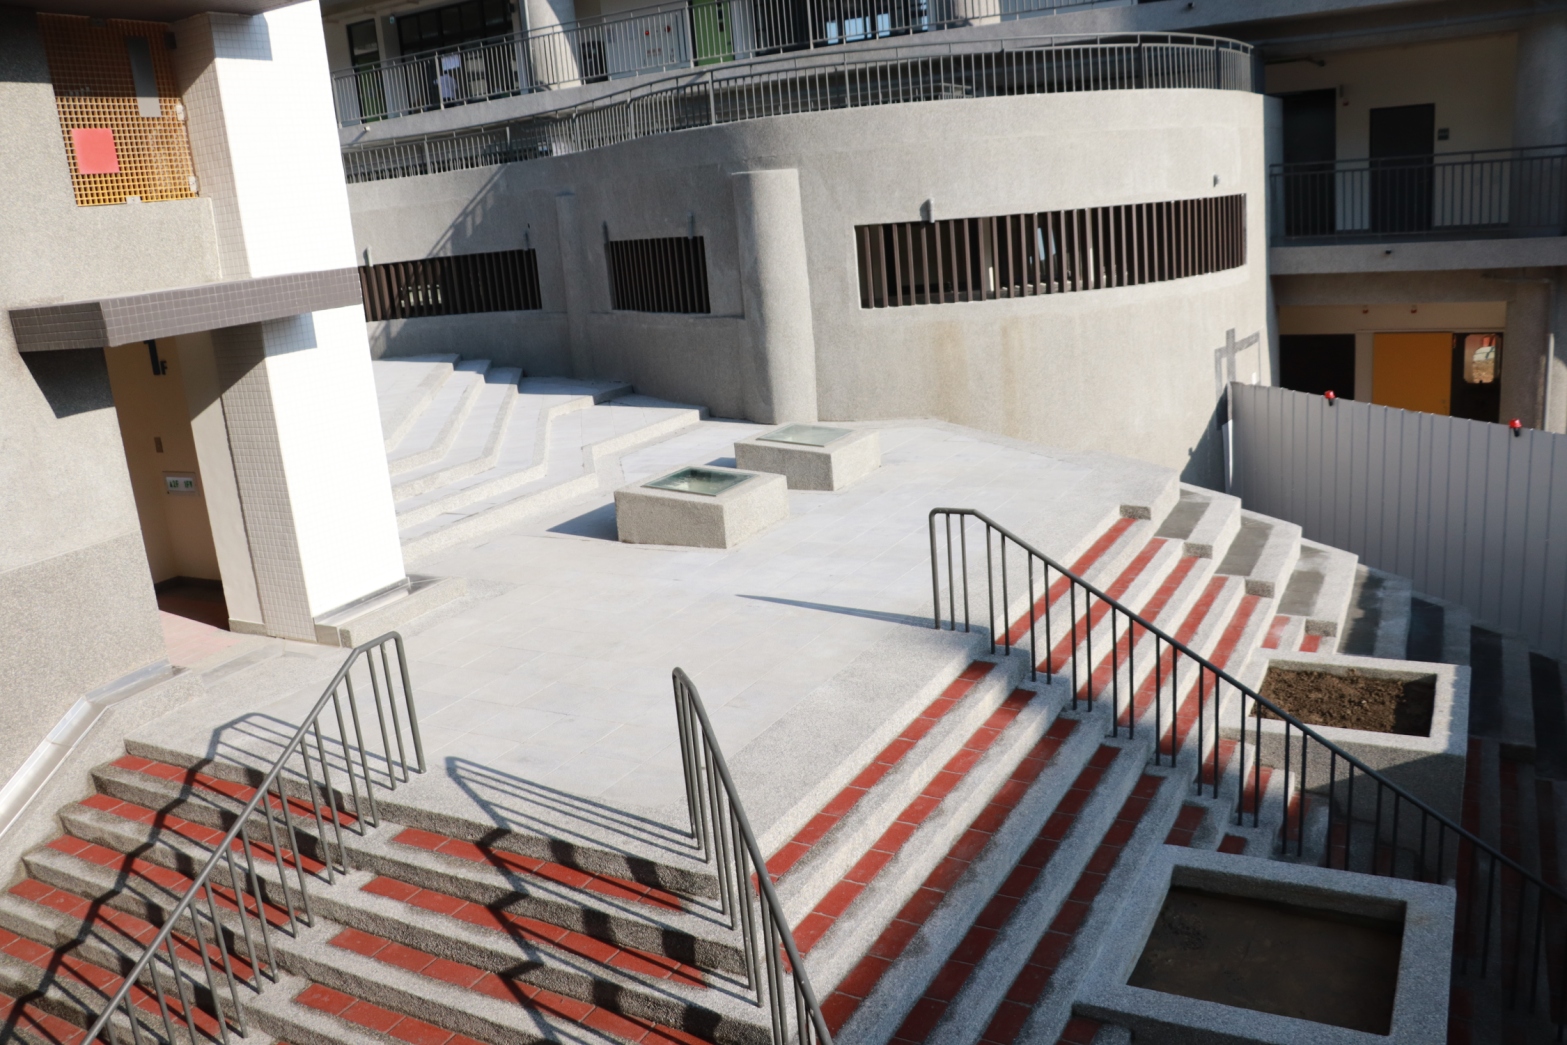 中山國小校舍改建工程以美學導向的藝術校園為主，利用戶外階梯為戲劇小舞臺，讓校園建築充滿美學藝文特色。